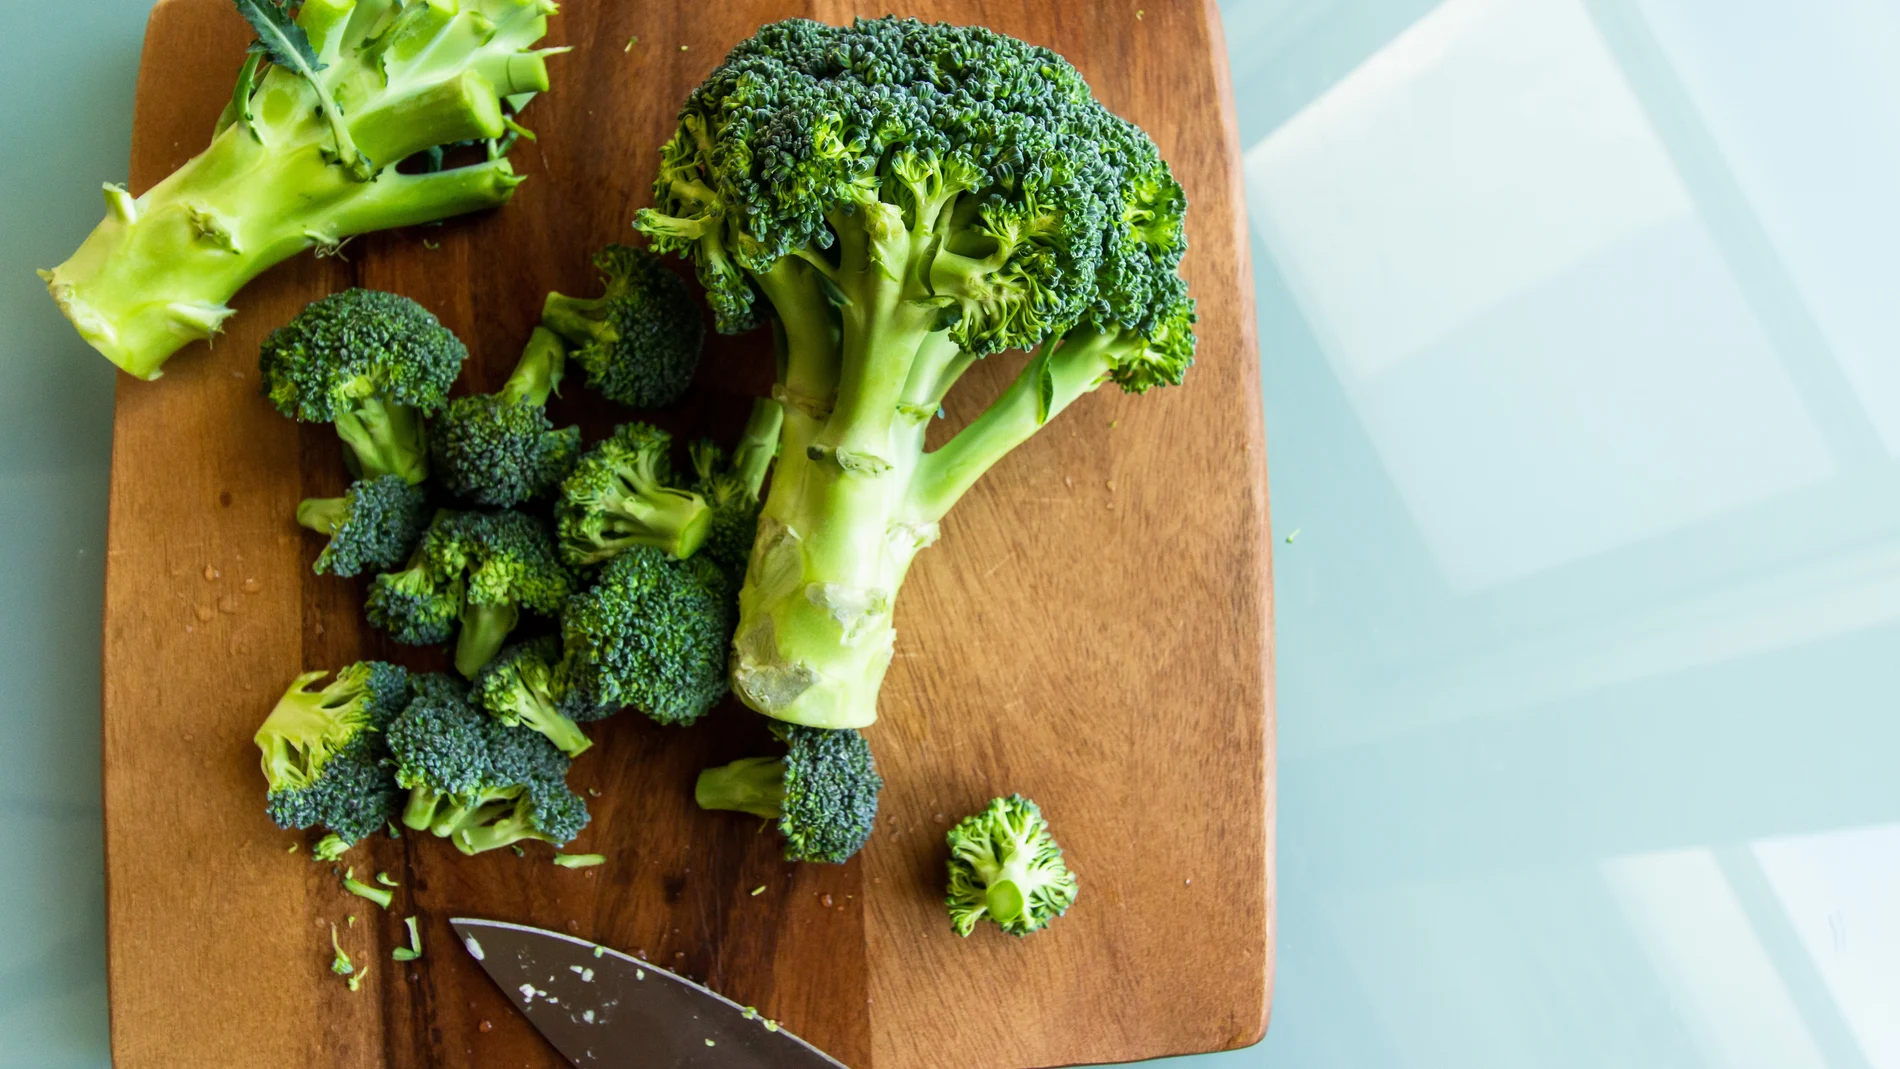 Al comer brócoli, el cuerpo lo transforma en sulforofano una sustancia anticancerígena que desata una reacción química en el organismo que favorece la absorción de la grasa